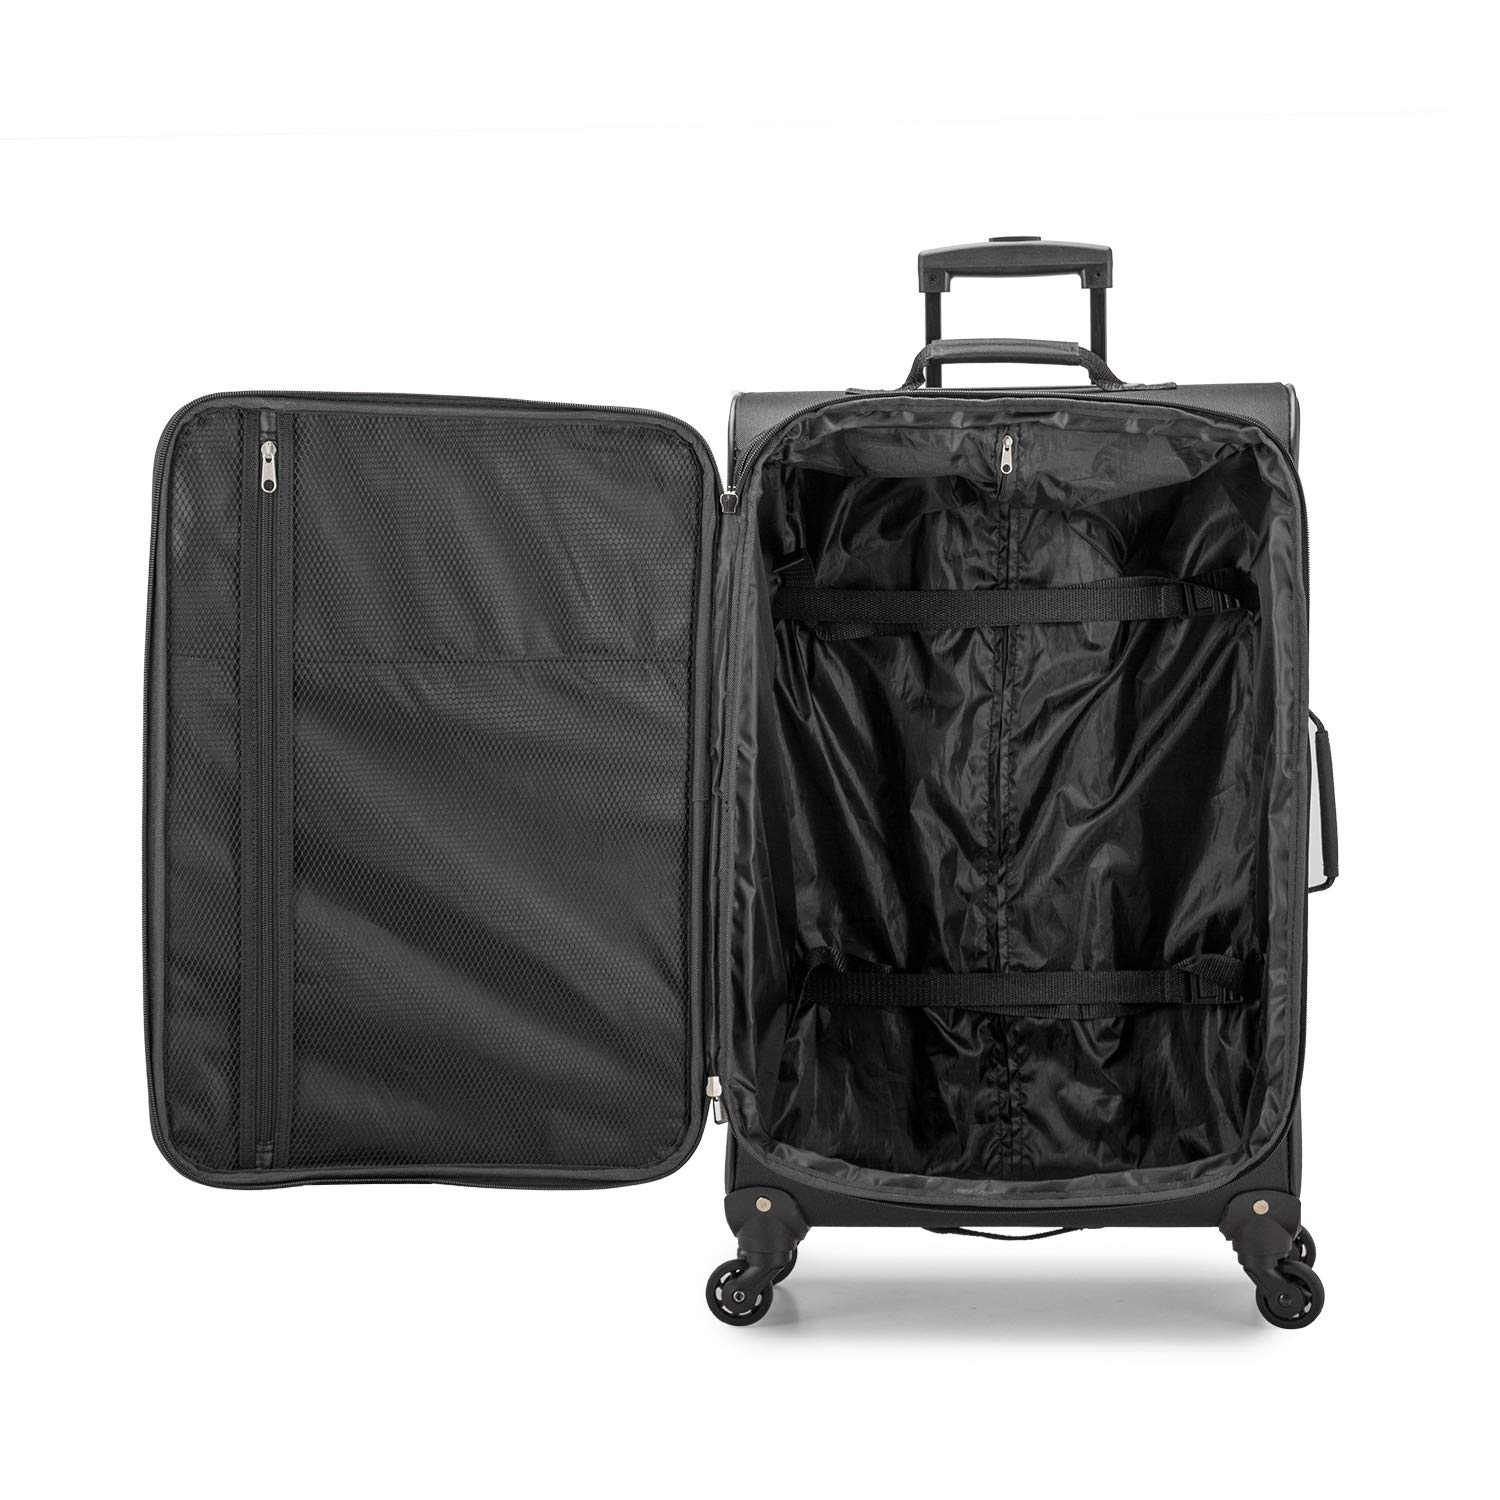 U.S. Traveler Aviron Bay Expandable Softside Spinner Wheels, Black, 2 Piece Luggage